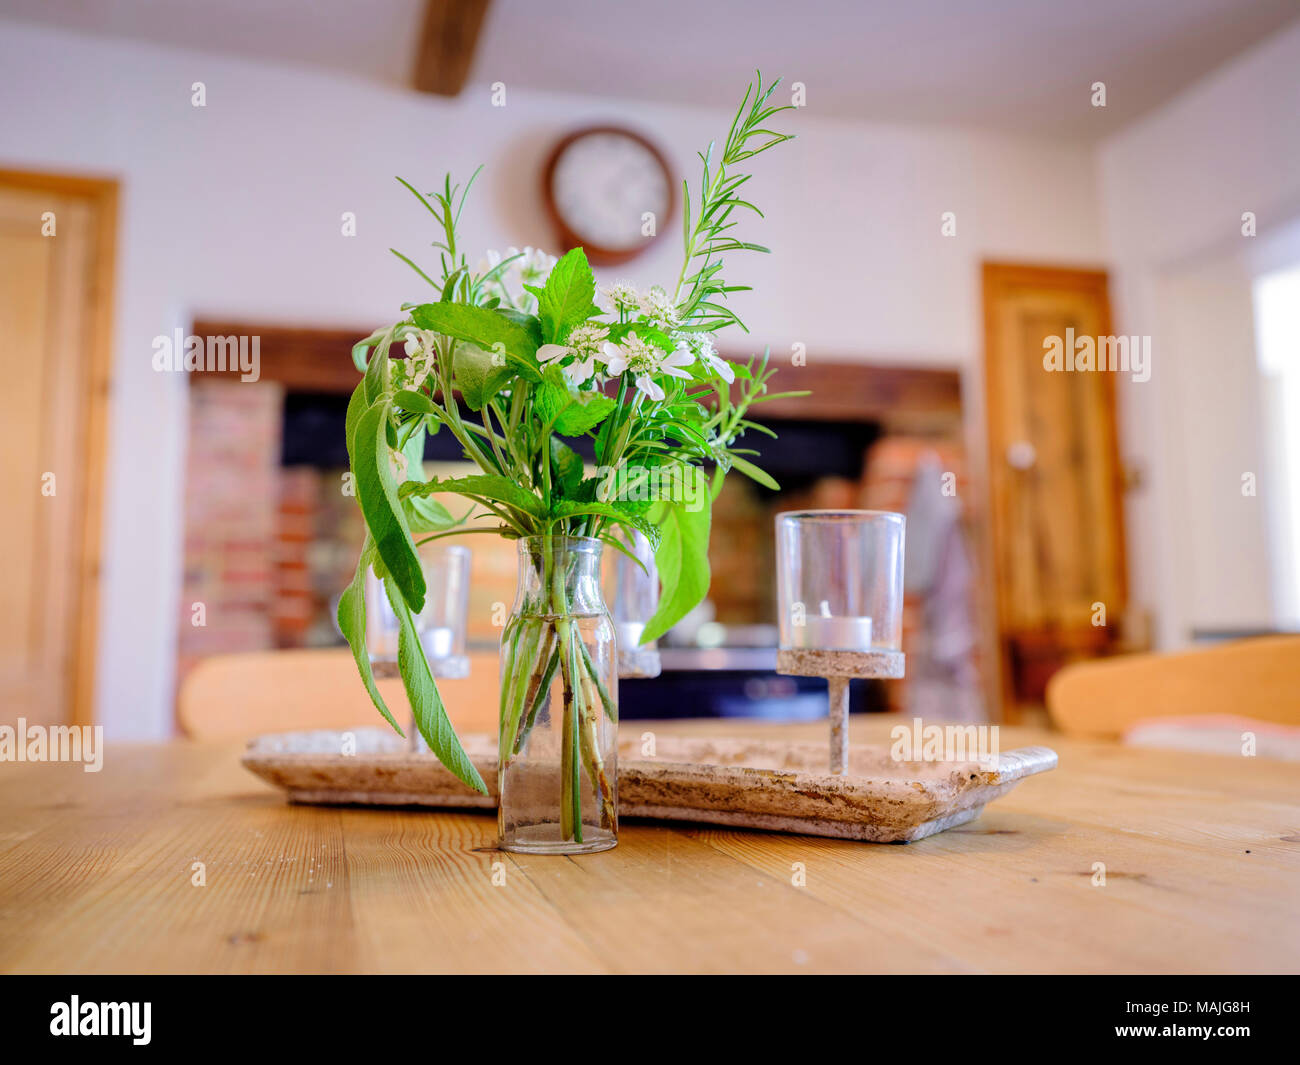 Accueil les fleurs sur une table de cuisine dans une cuisine d'été. Banque D'Images